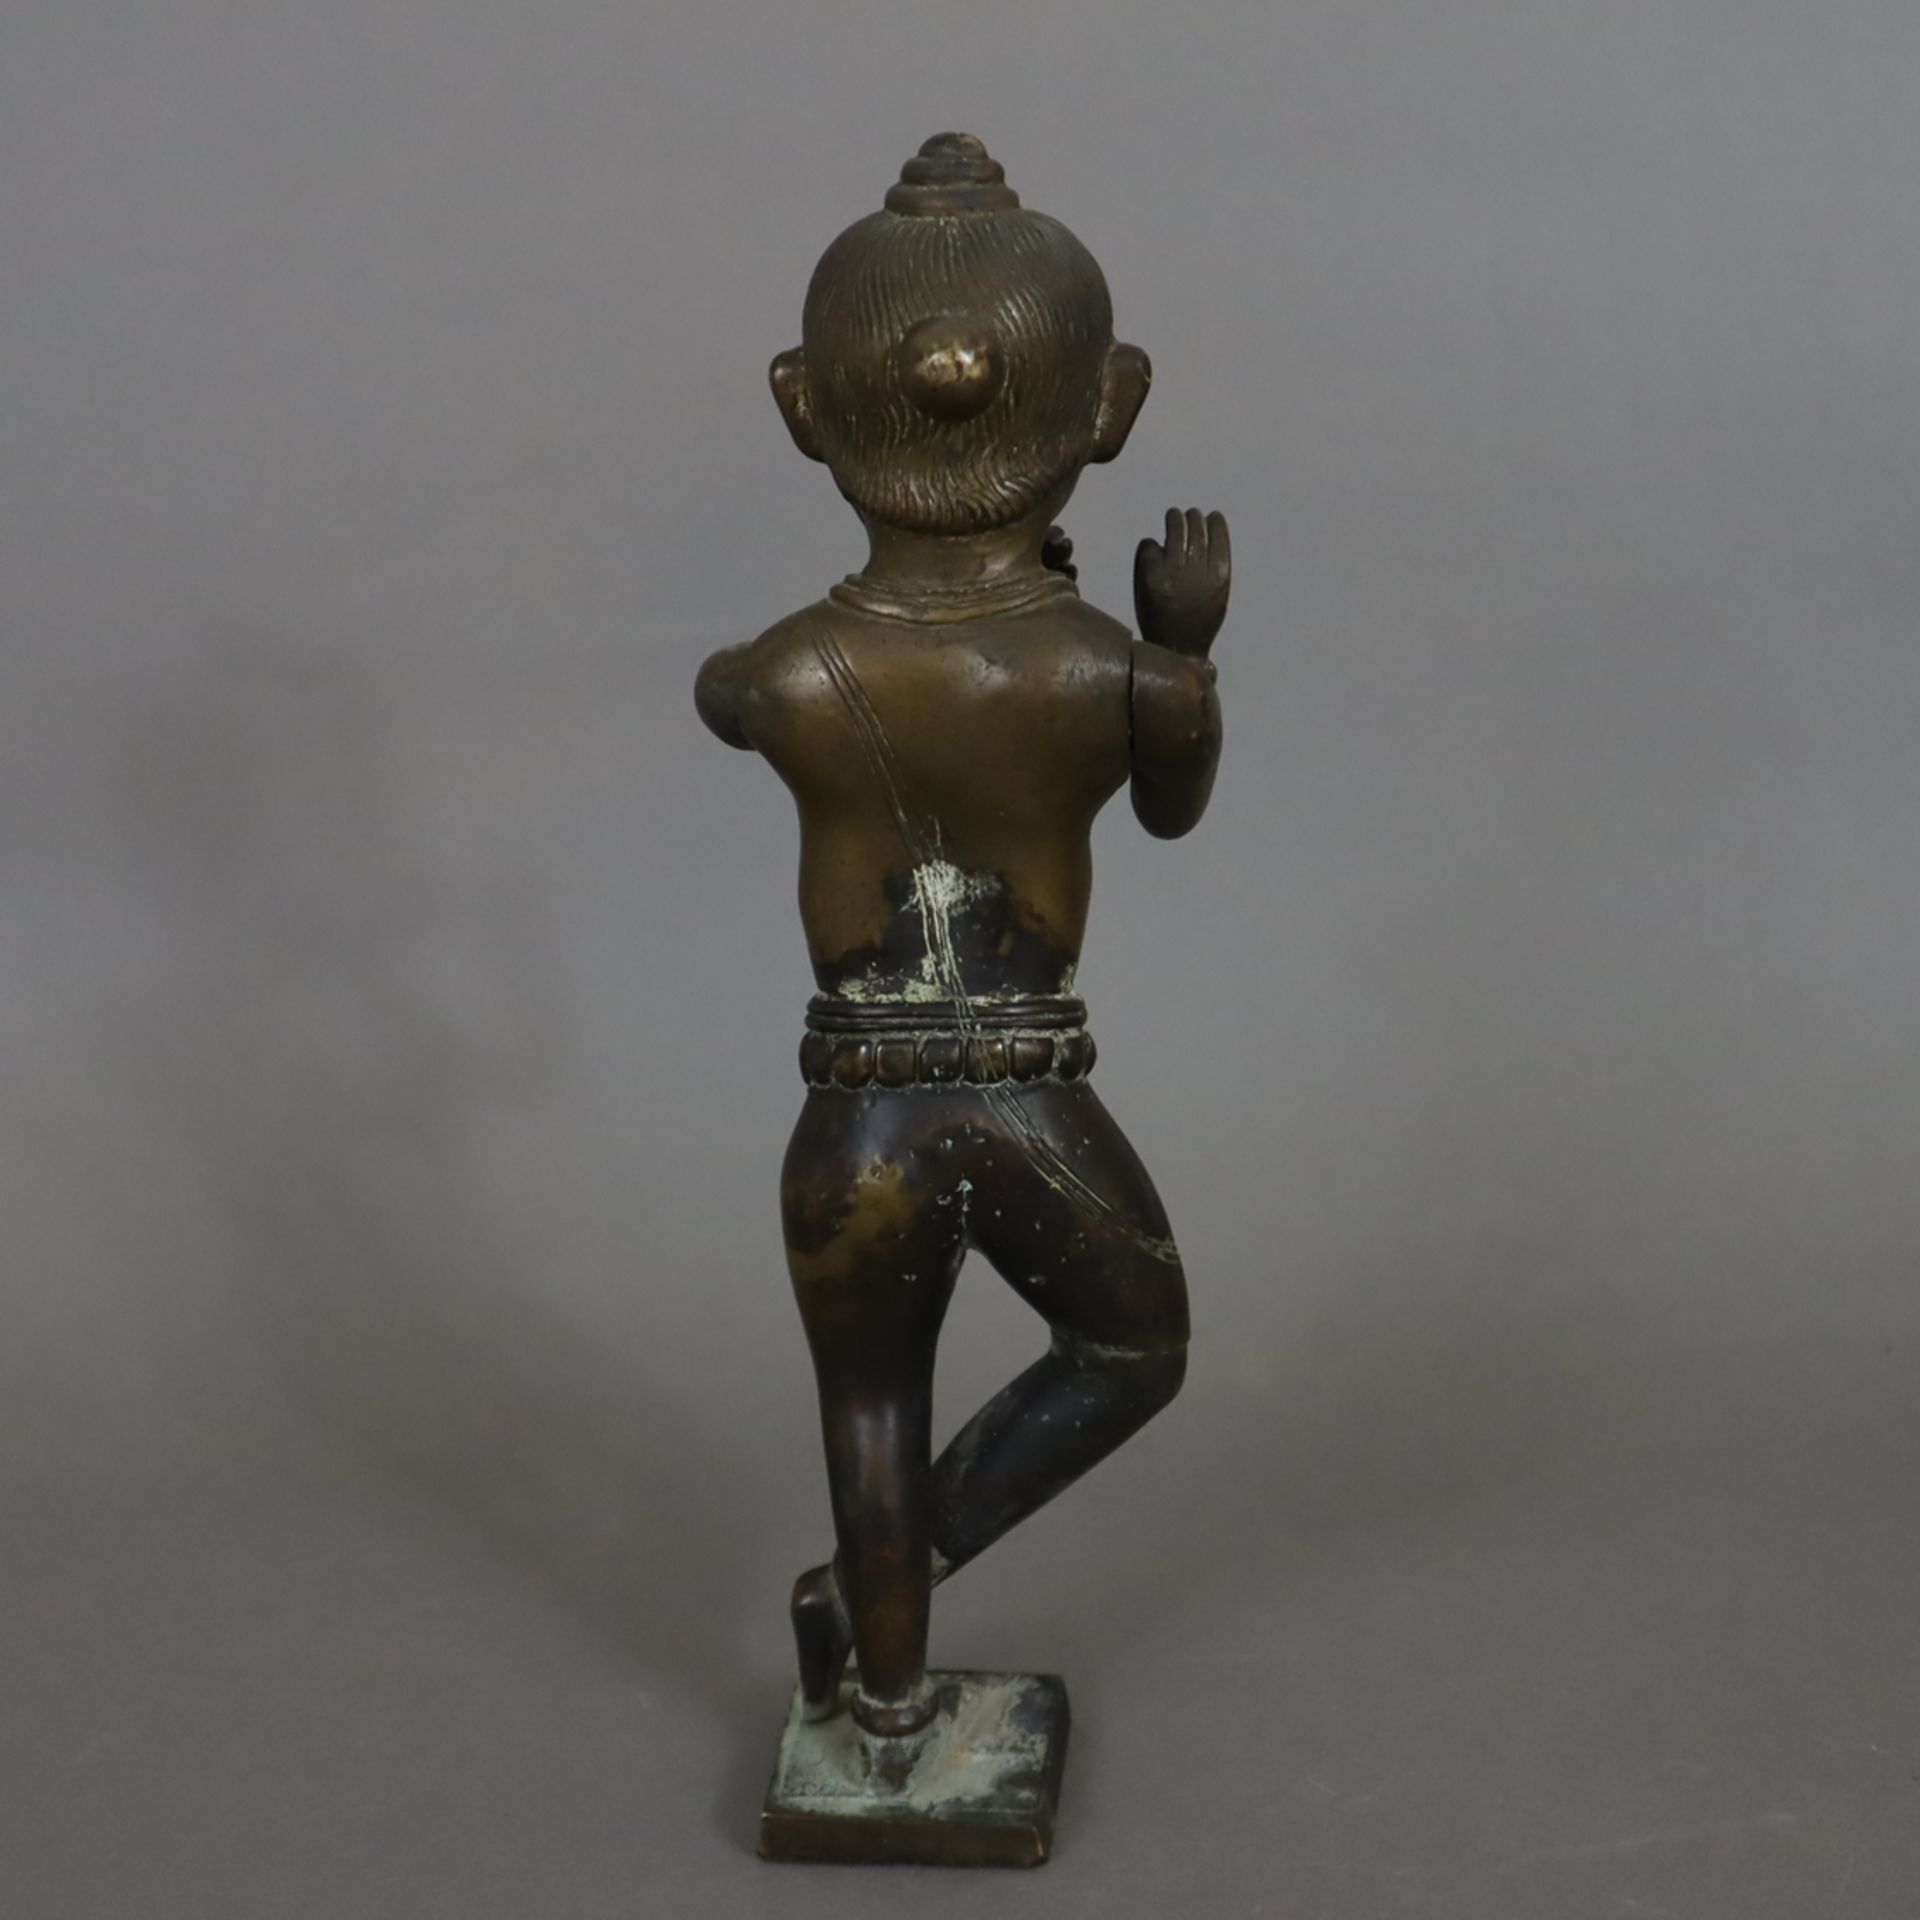 Flöte spielender Krishna - Bronze, Indien, in typischer Pose auf einem quadratischen Sockel stehend - Image 7 of 8